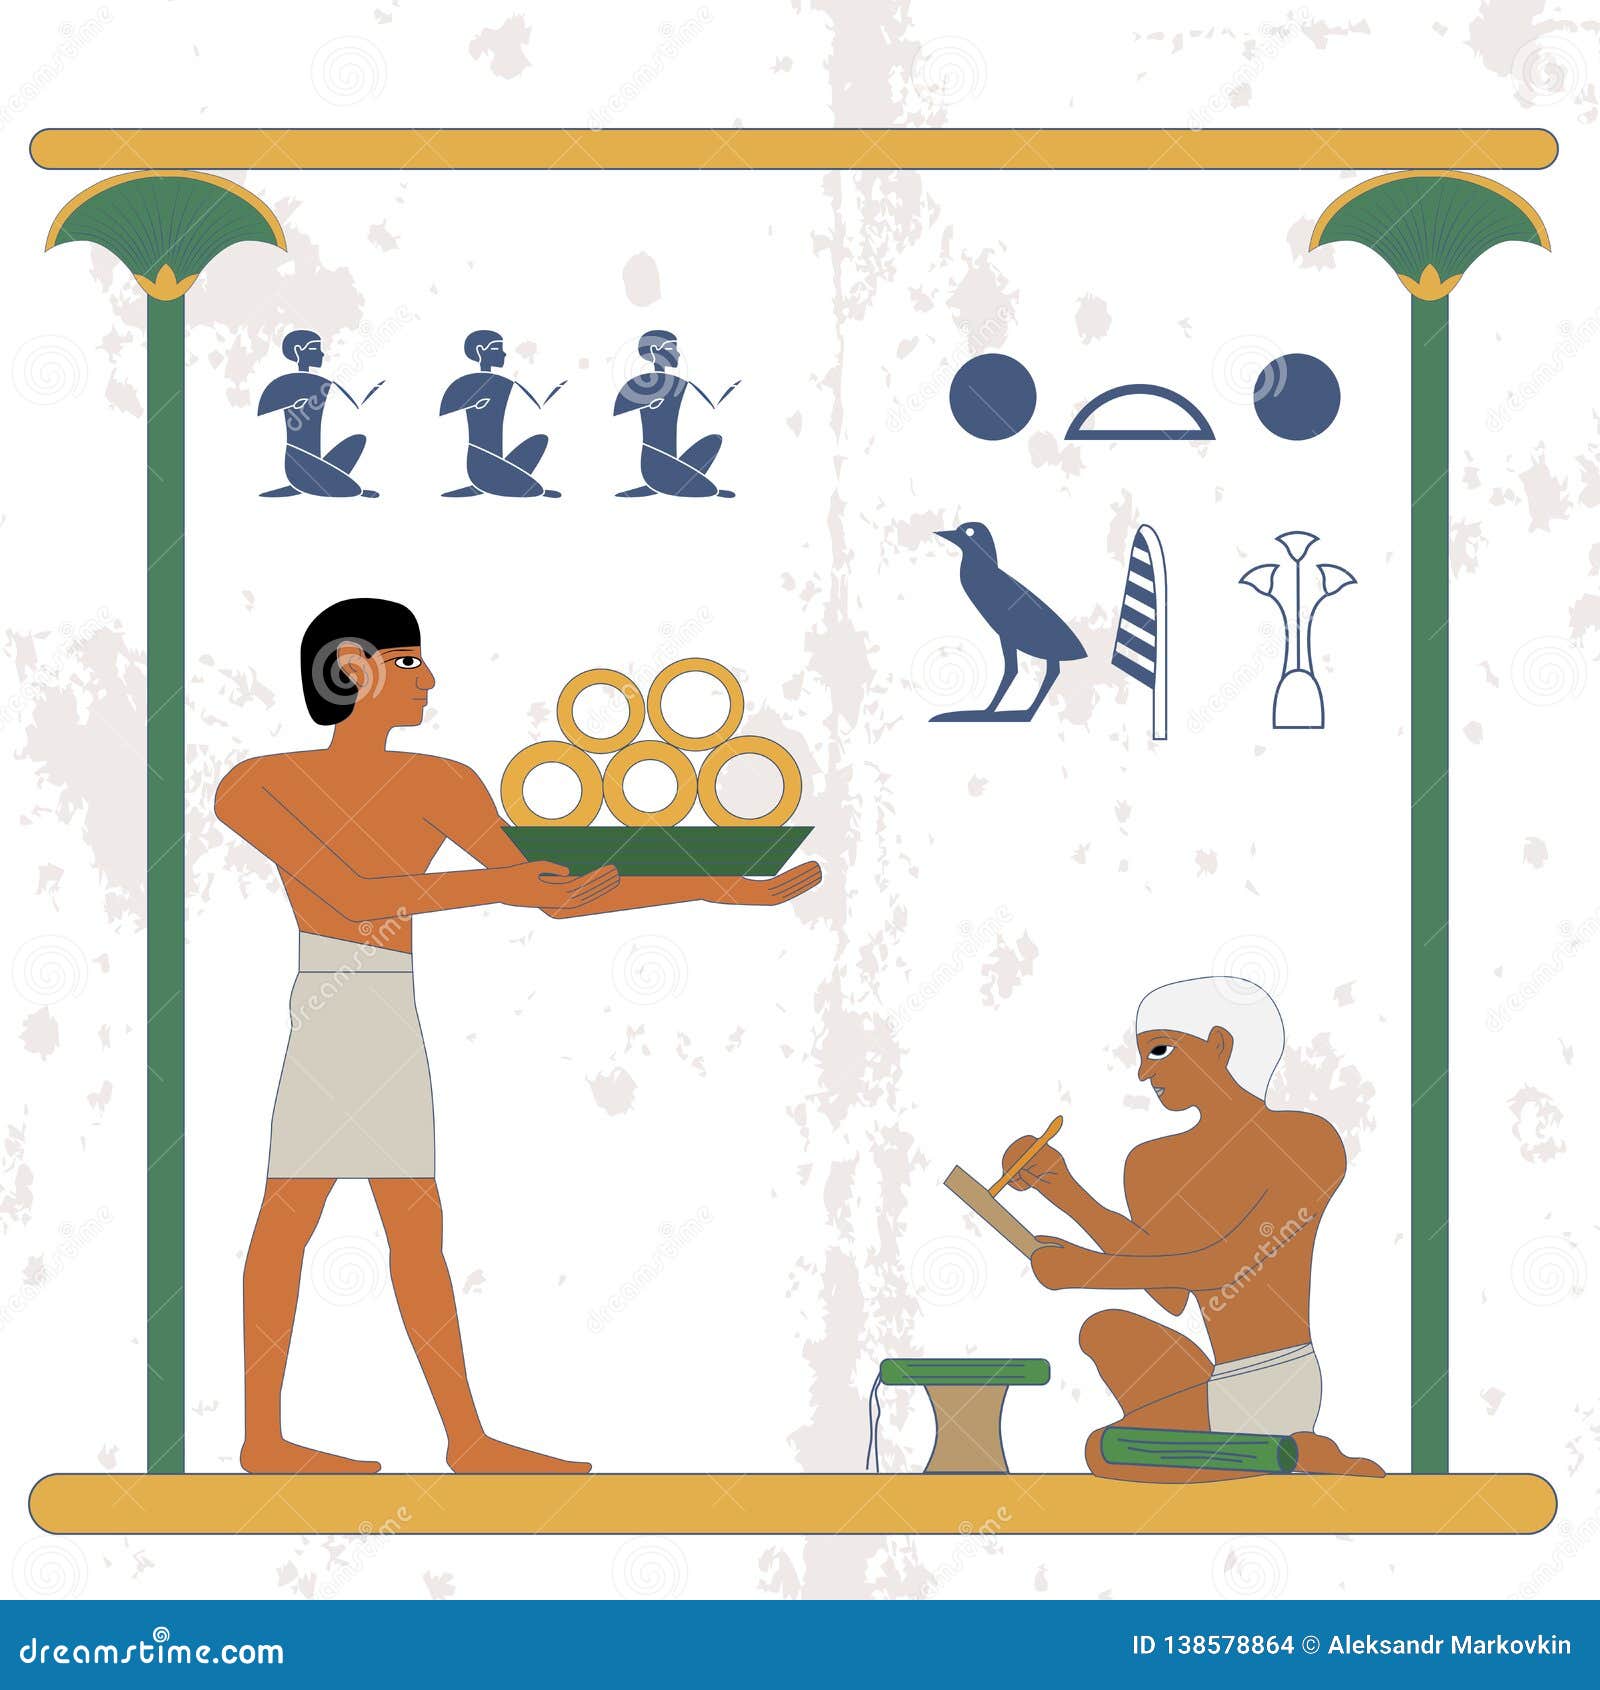 Nền tảng Ai Cập cổ đại với những bí ẩn khó lường luôn thu hút sự tò mò của con người. Kết hợp với nhà văn phòng vàng và người hầu, những bức hình ảnh chắc chắn sẽ khiến bạn bồi hồi và đắm mình trong không gian cổ đại đầy kỳ bí.